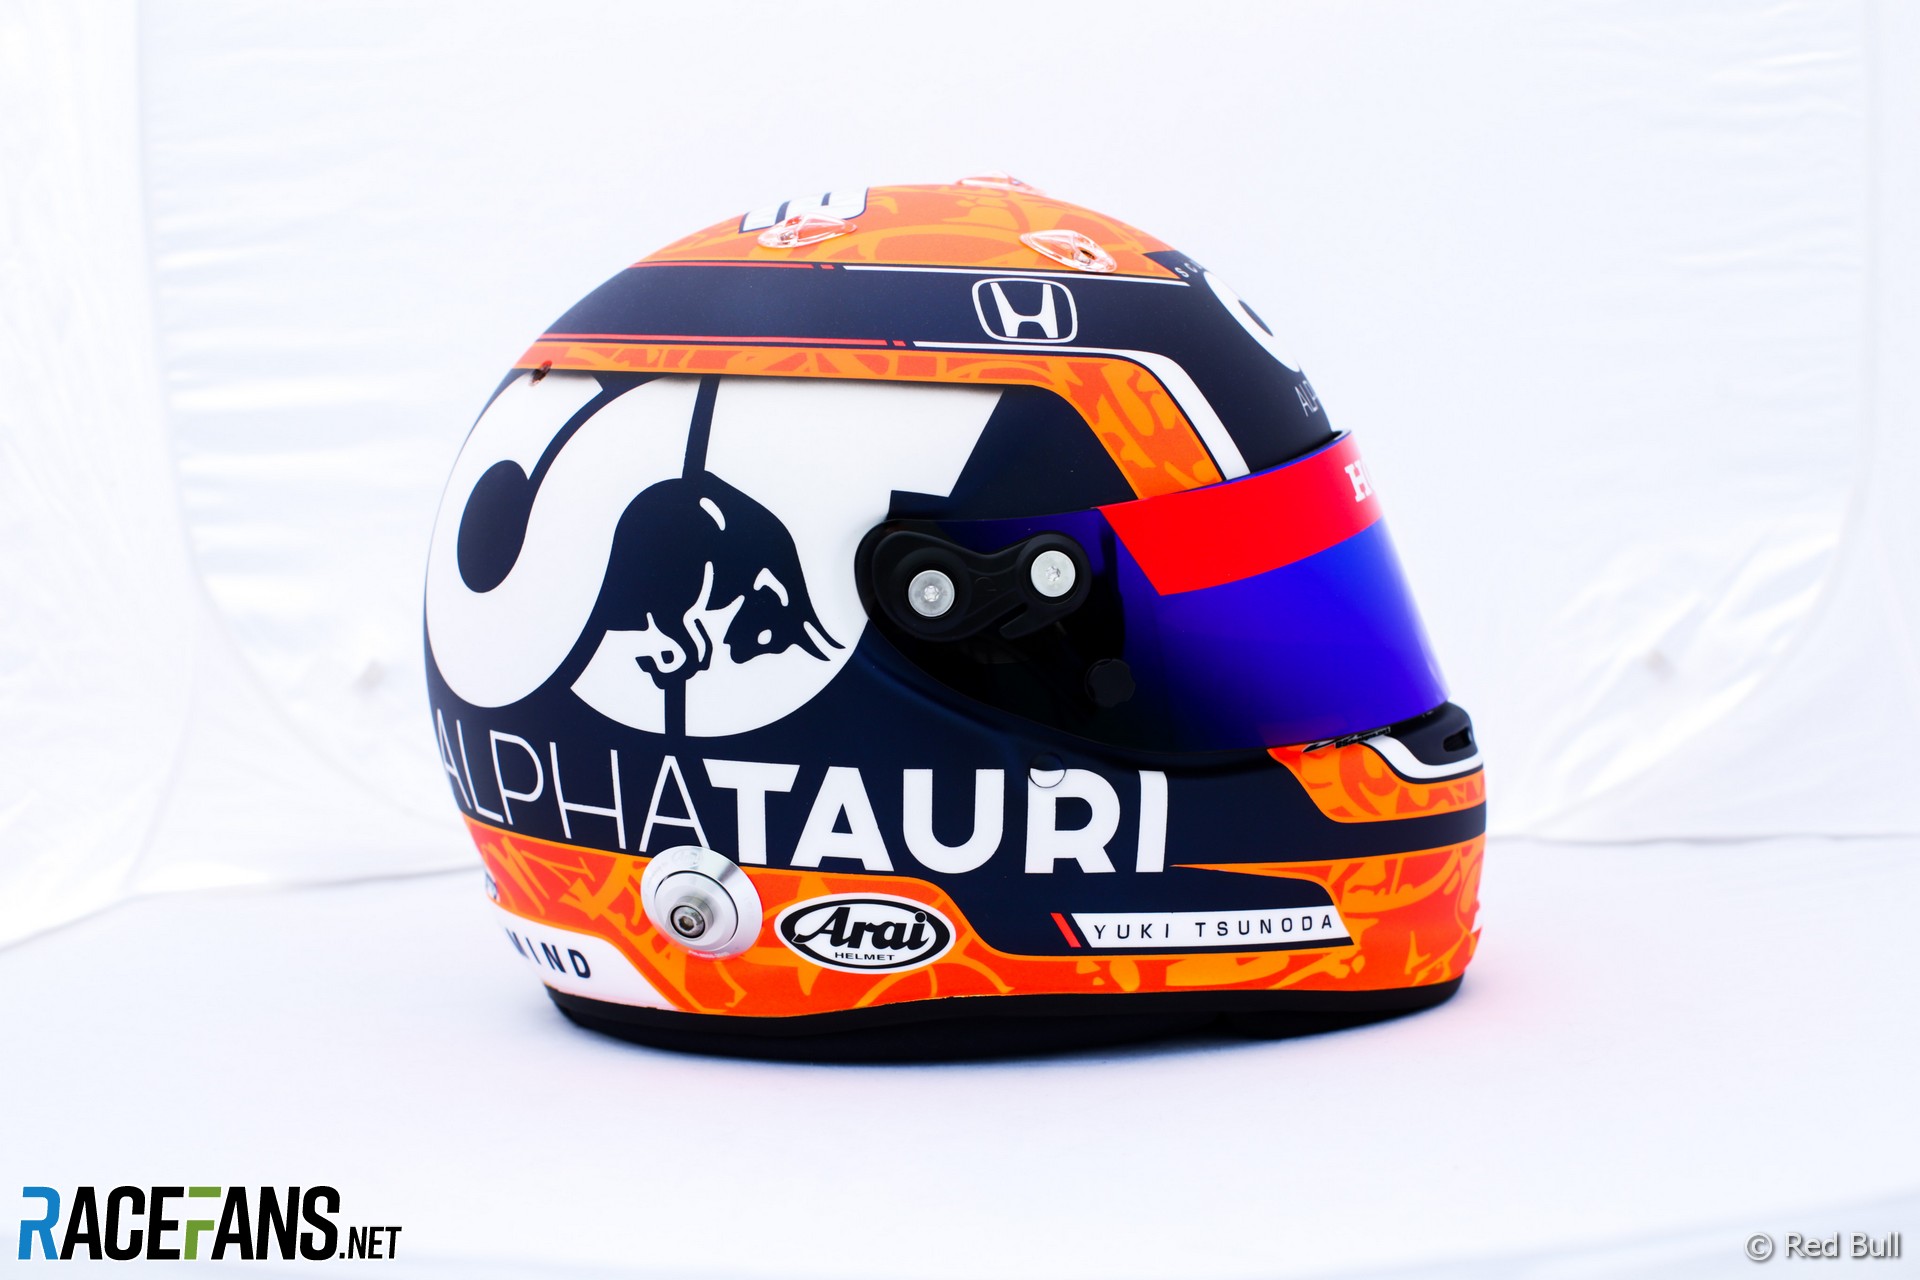 Yuki Tsunoda's 2021 French Grand Prix helmet